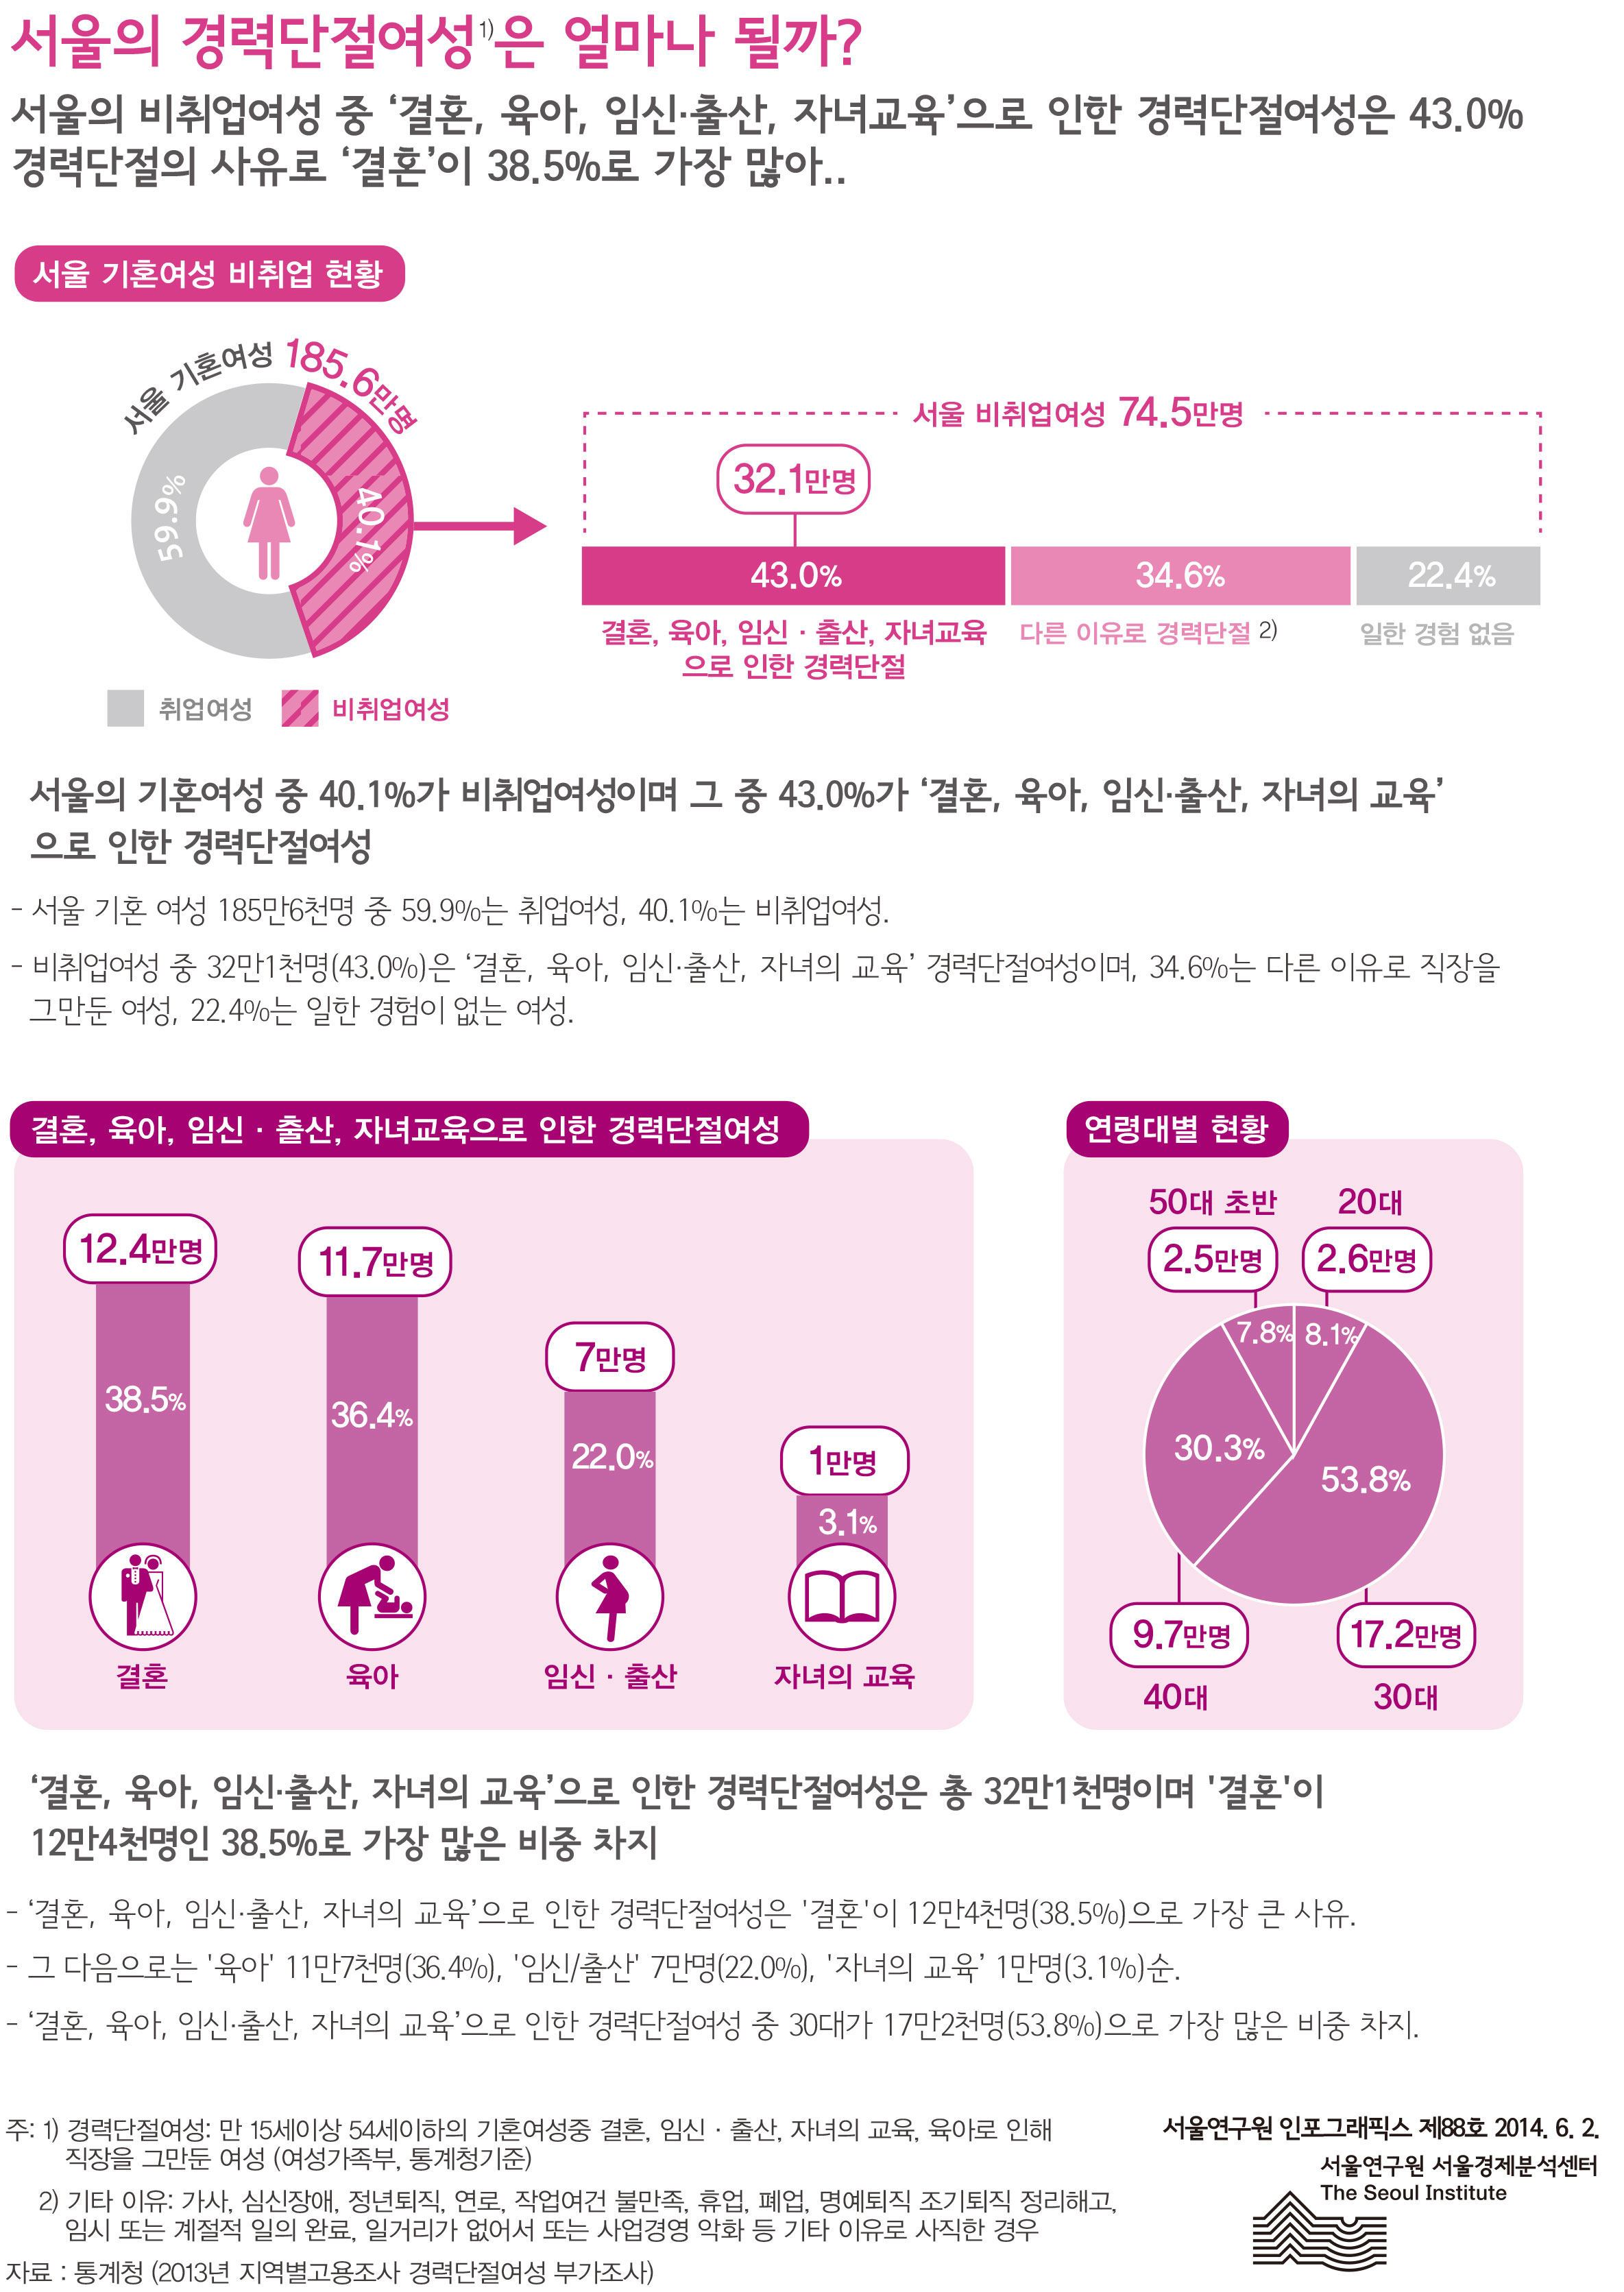 서울의 경력단절여성은 얼마나 될까? 서울인포그래픽스 제88호 2014년 6월 2일 서울의 비취업여성 중 ‘결혼, 육아, 임신·출산, 자녀교육’으로 인한 경력단절여성은 43.0%. 경력단절의 사유로‘결혼’이 38.5%로 가장 많음으로 정리될 수 있습니다. 인포그래픽으로 제공되는 그래픽은 하단에 표로 자세히 제공됩니다.